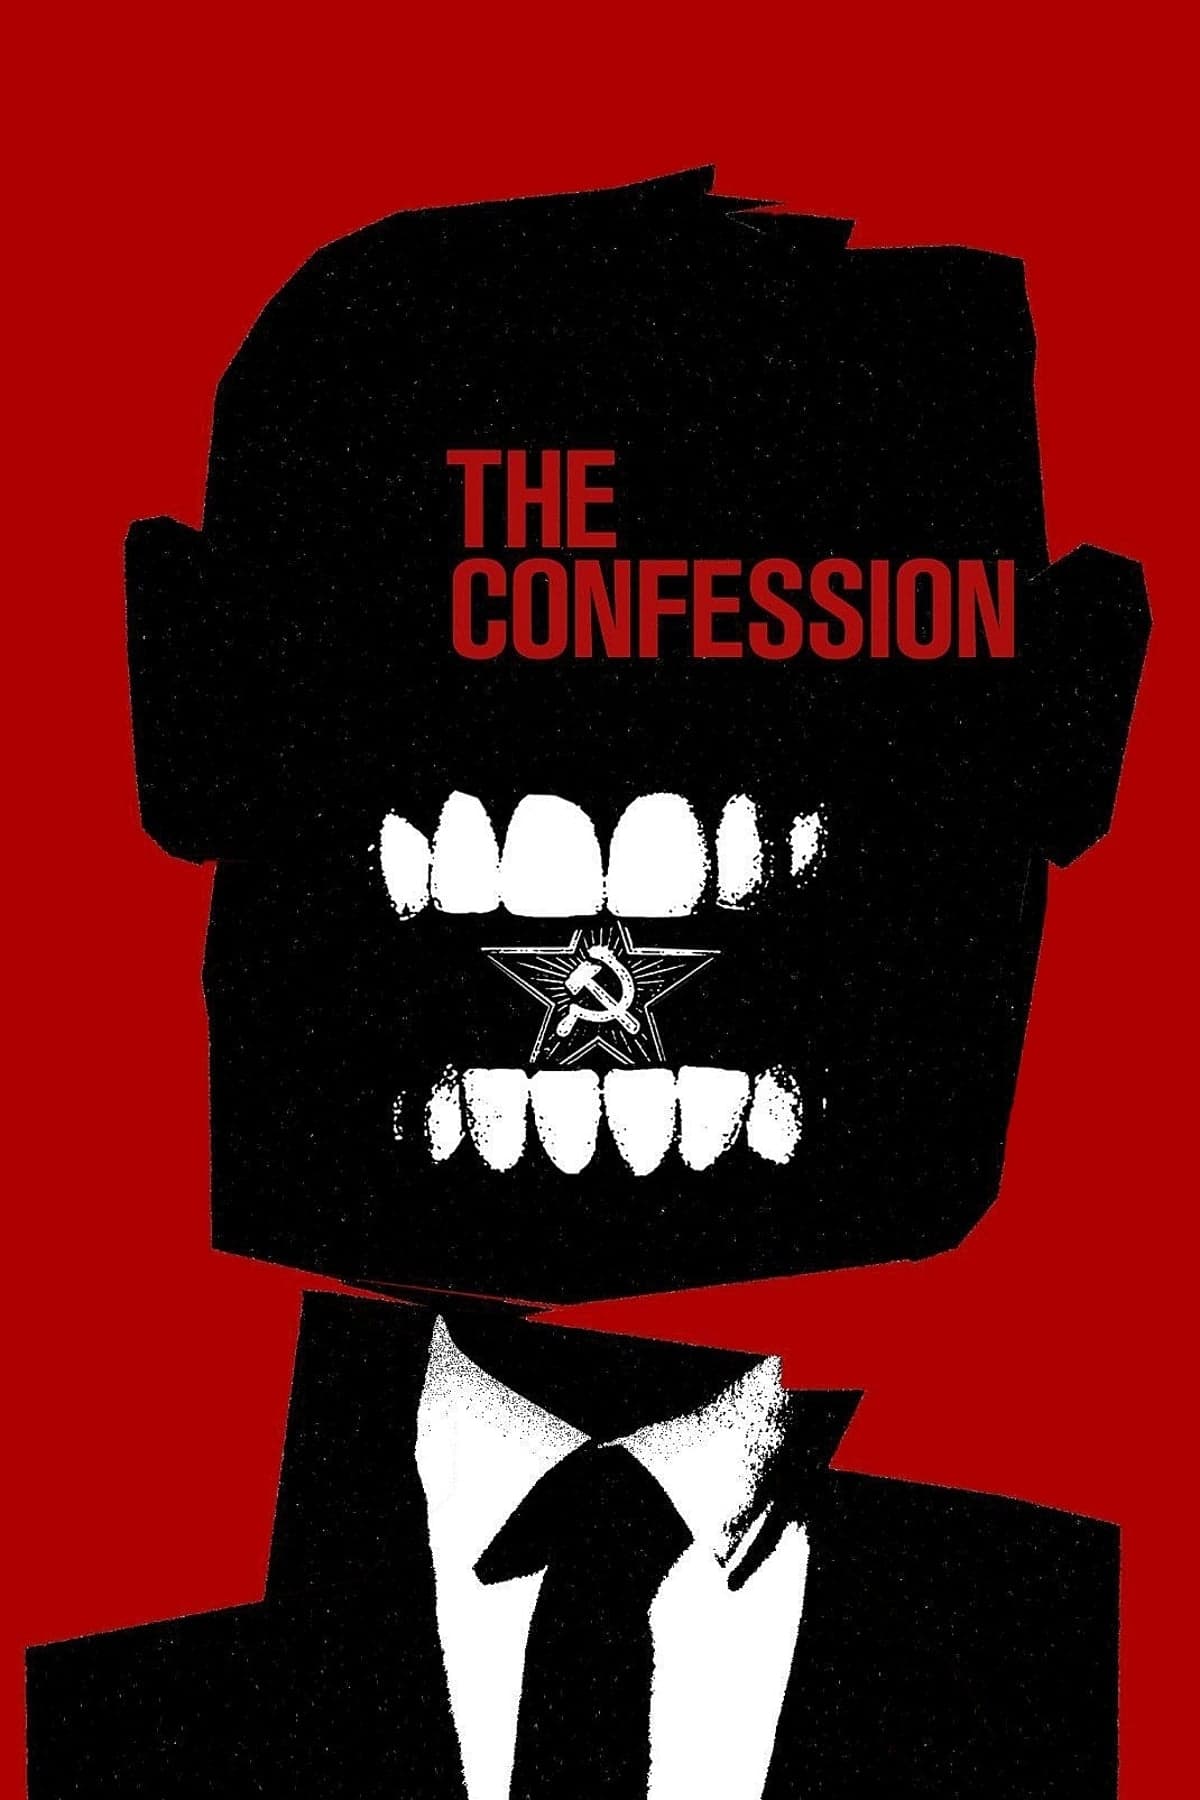 La confesión